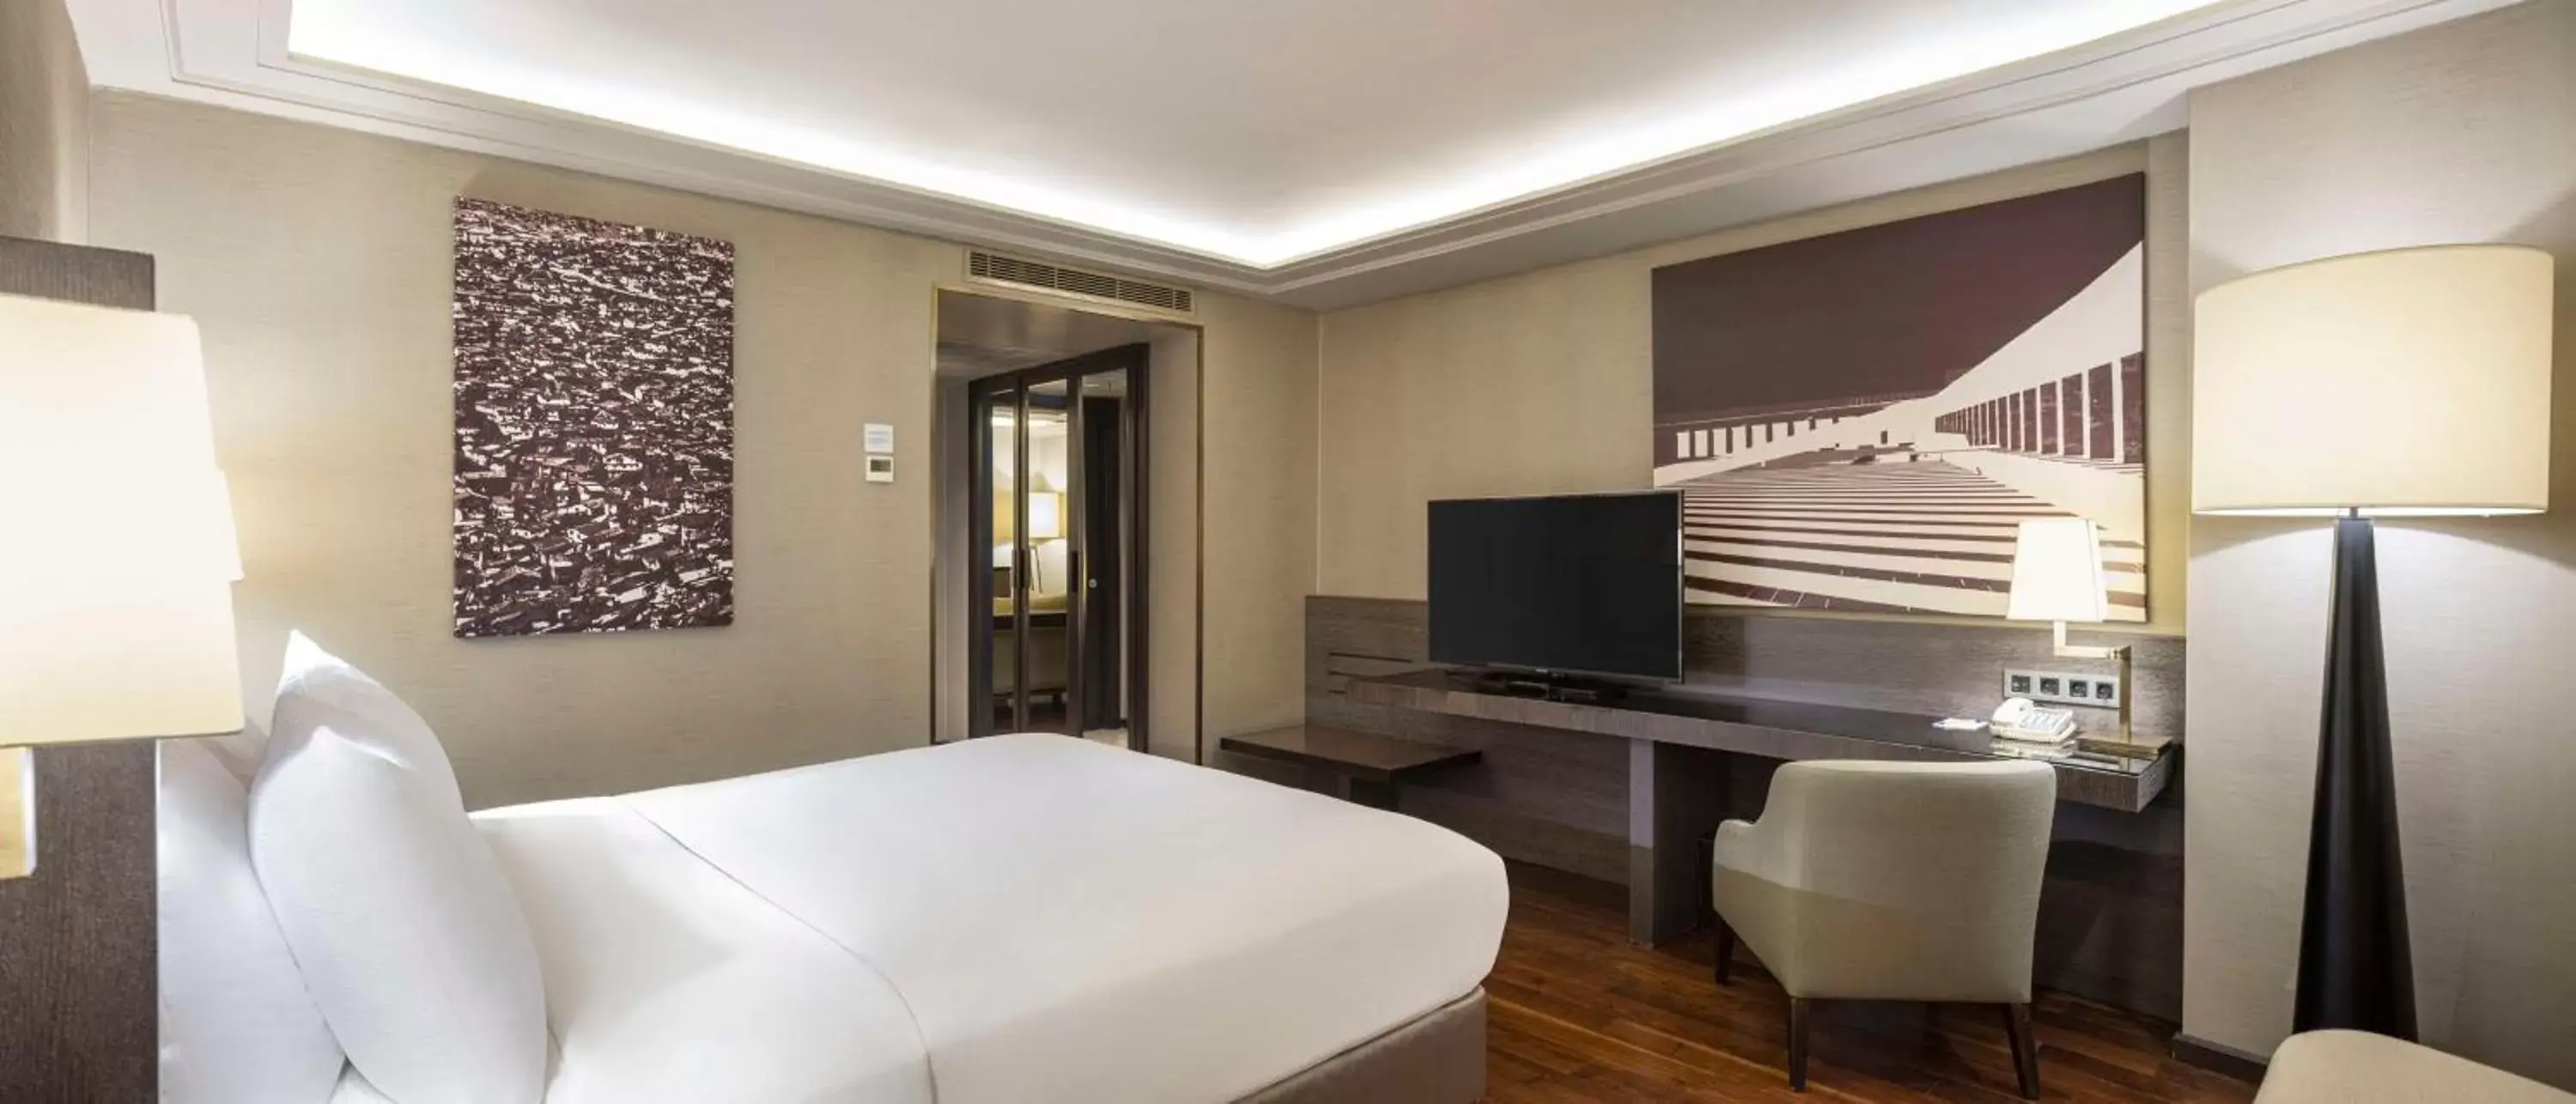 Bedroom, TV/Entertainment Center in Ankara HiltonSA